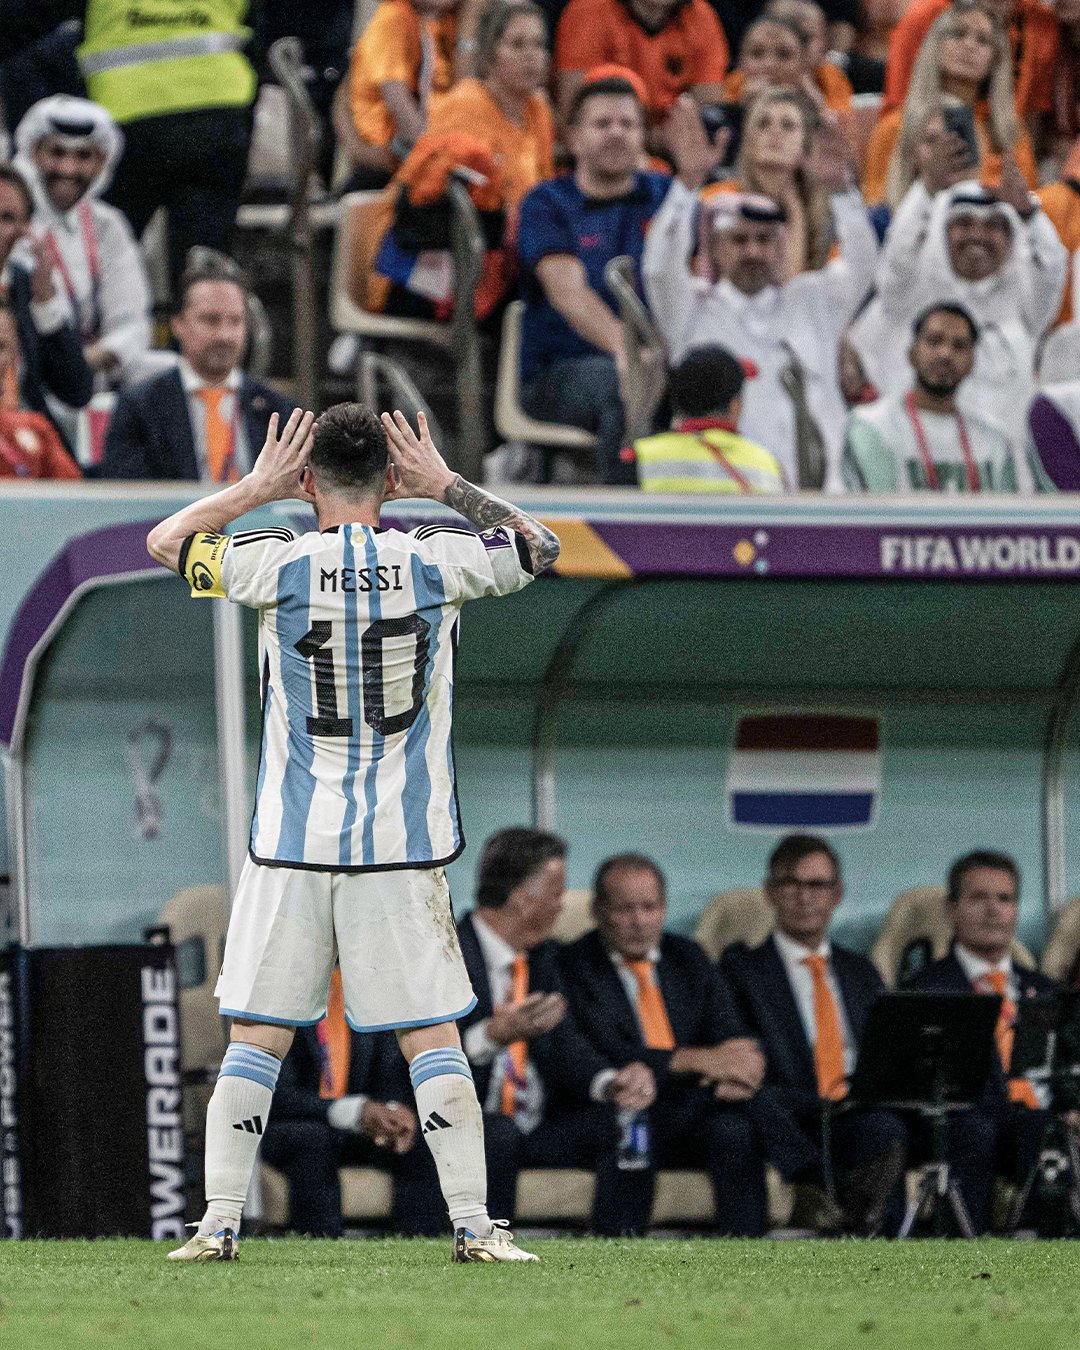 Bàn thắng của Lionel Messi đã mang đến chiến thắng cho đội tuyển Argentina, hãy cùng nhìn lại khoảnh khắc ăn mừng đầy cảm xúc của Messi và đồng đội trong bức ảnh tuyệt đẹp. Bức ảnh này đâu phải chỉ là thể hiện niềm vui trên sân, mà còn là cả sự thống nhất và đoàn kết của đội tuyển.